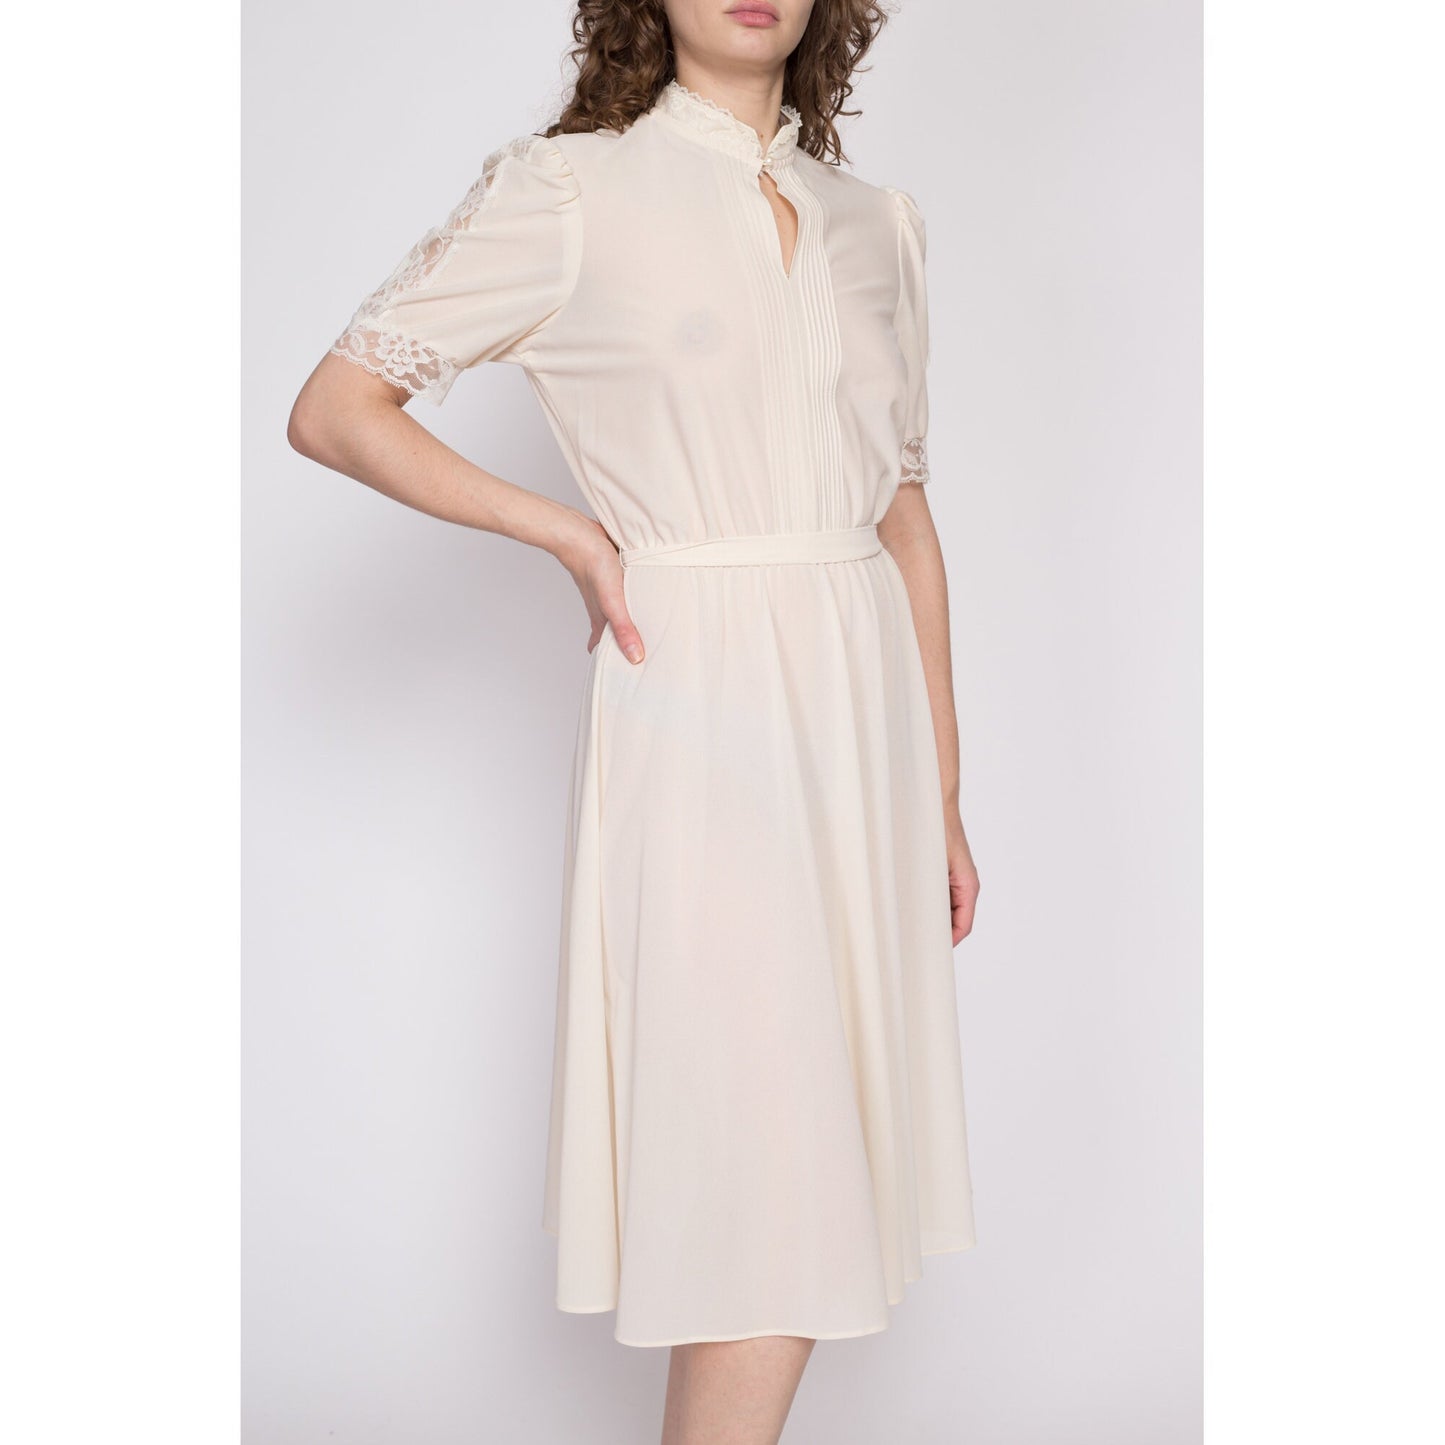 70s Sheer Cream Lace Trim Dress - Large | Vintage Boho Cottagecore Puff Sleeve Midi Dress